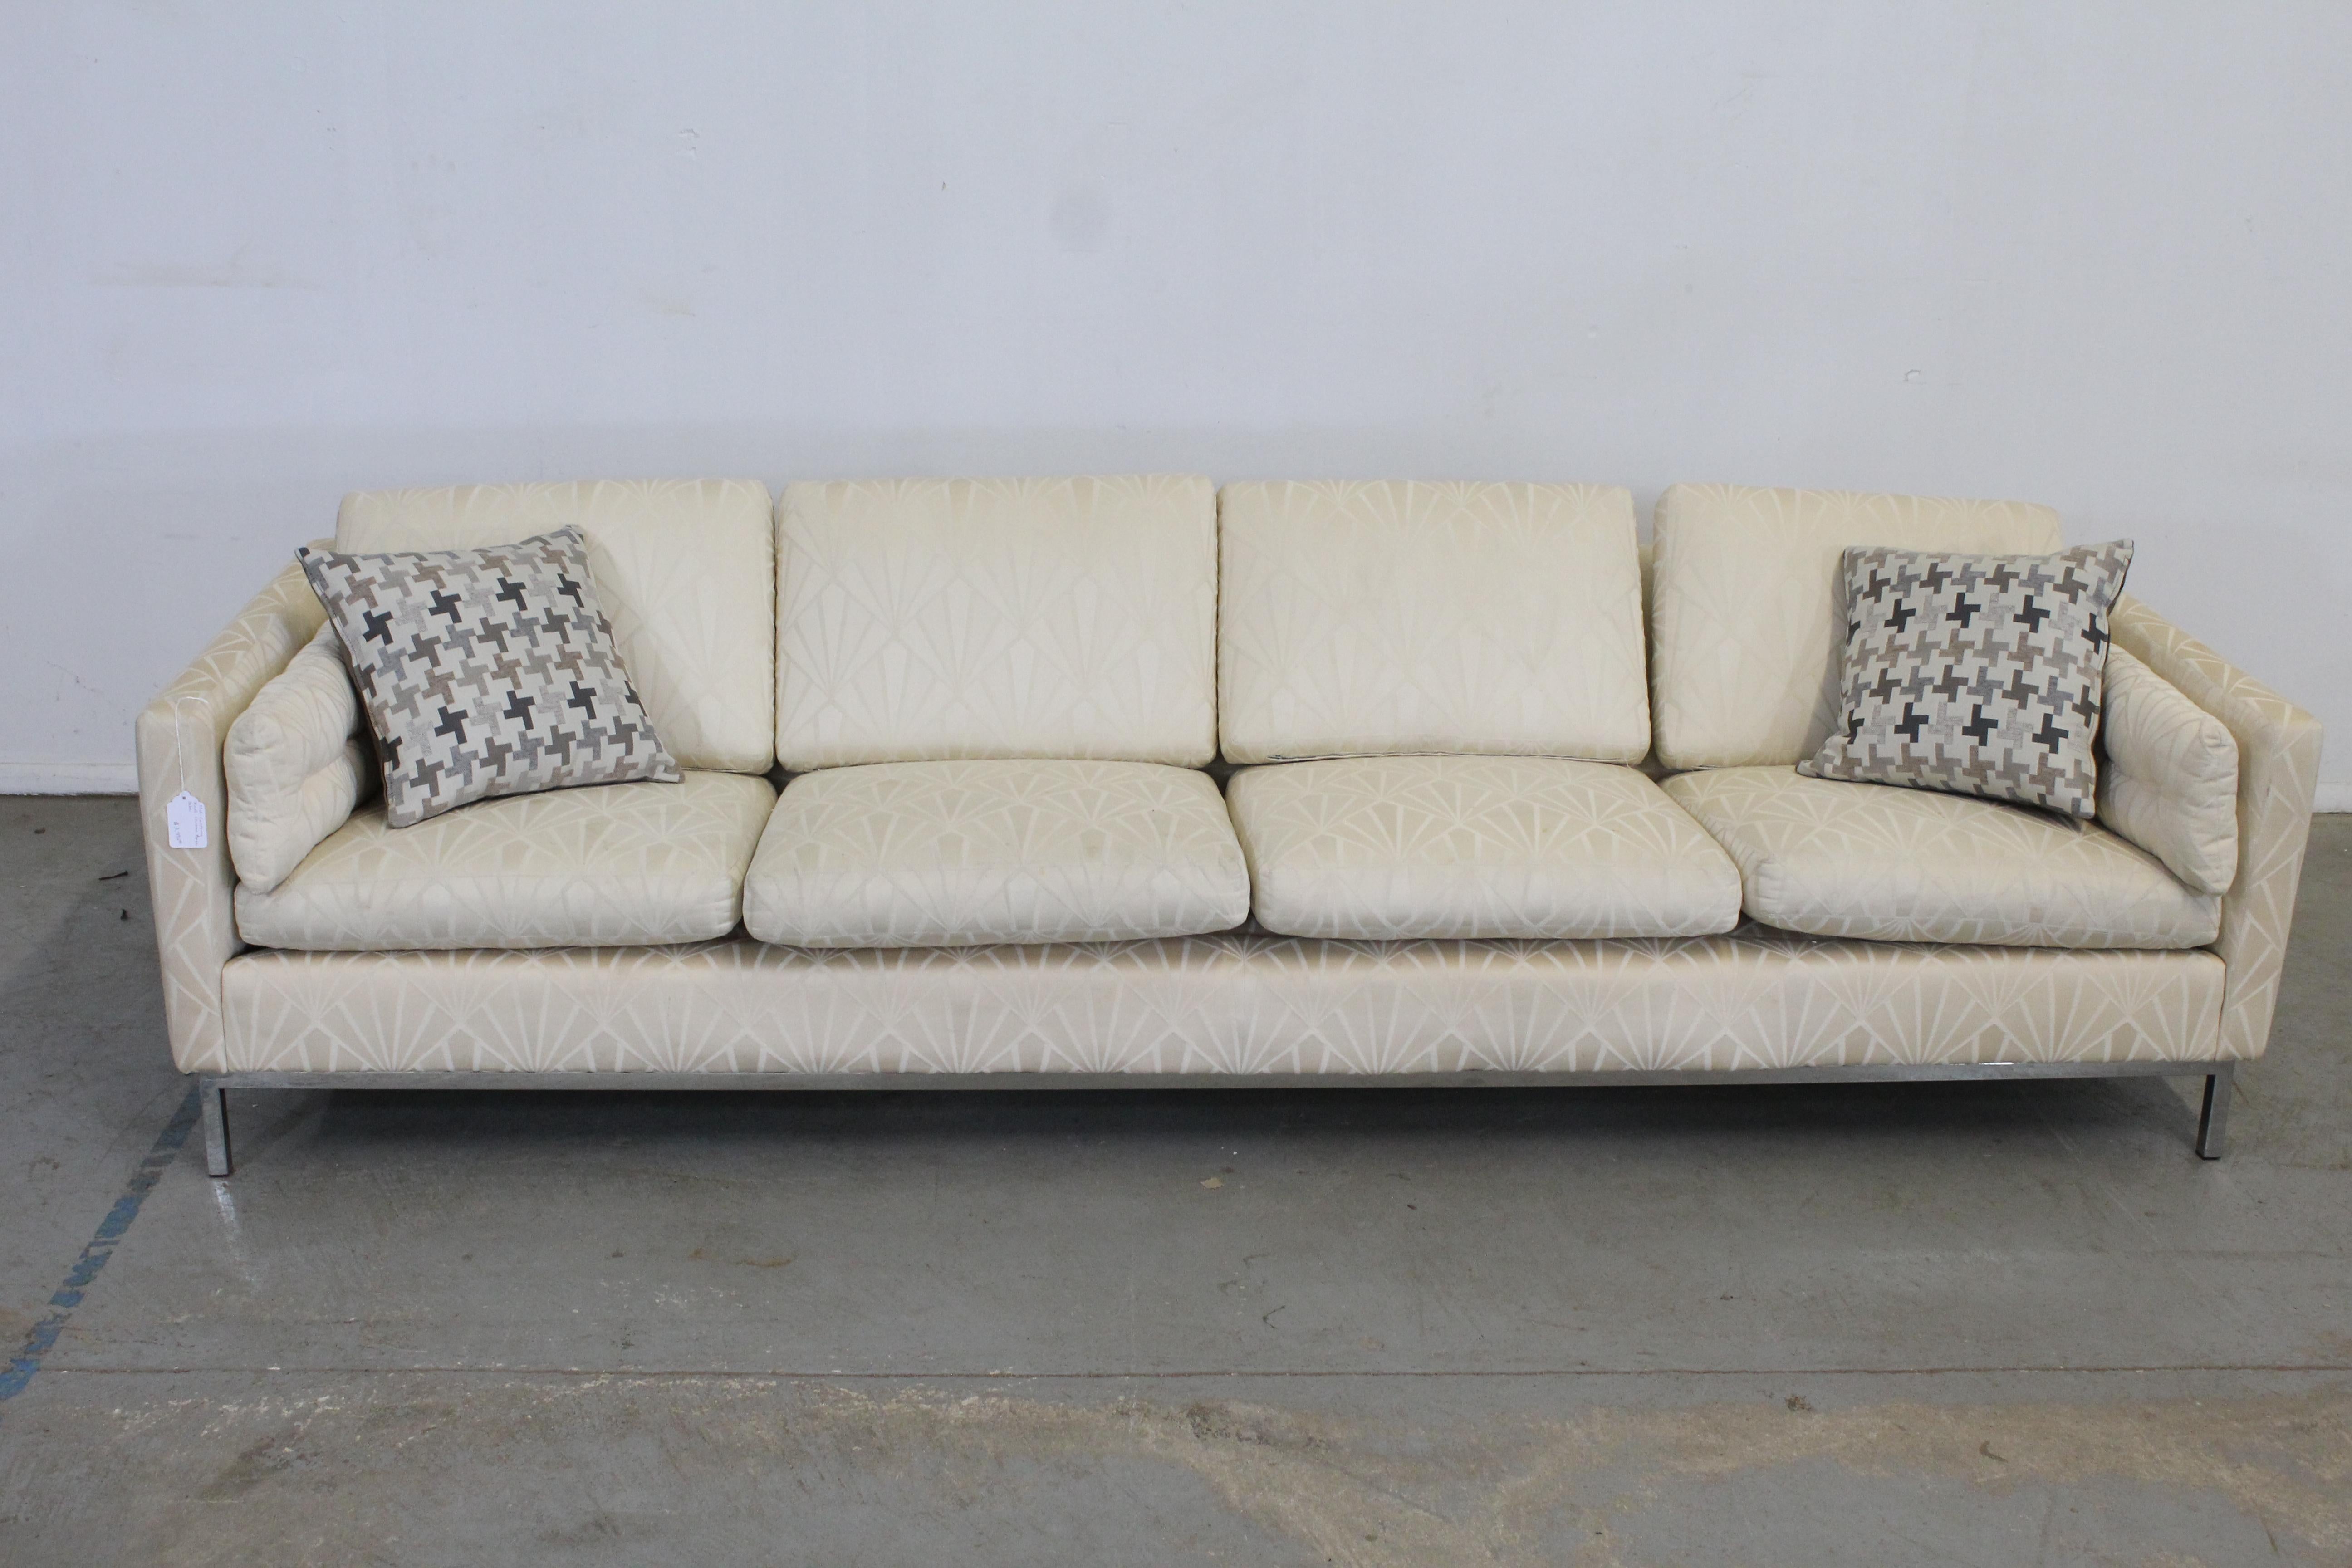 Angeboten wird ein Vintage Mid-Century Modern Sofa mit strukturierter Polsterung und einem verchromten Sockel, der Knoll zugeschrieben wird. Mit vier abnehmbaren Sitz- und Rückenkissen. Es ist in strukturell gutem Zustand, muss aber neu gepolstert